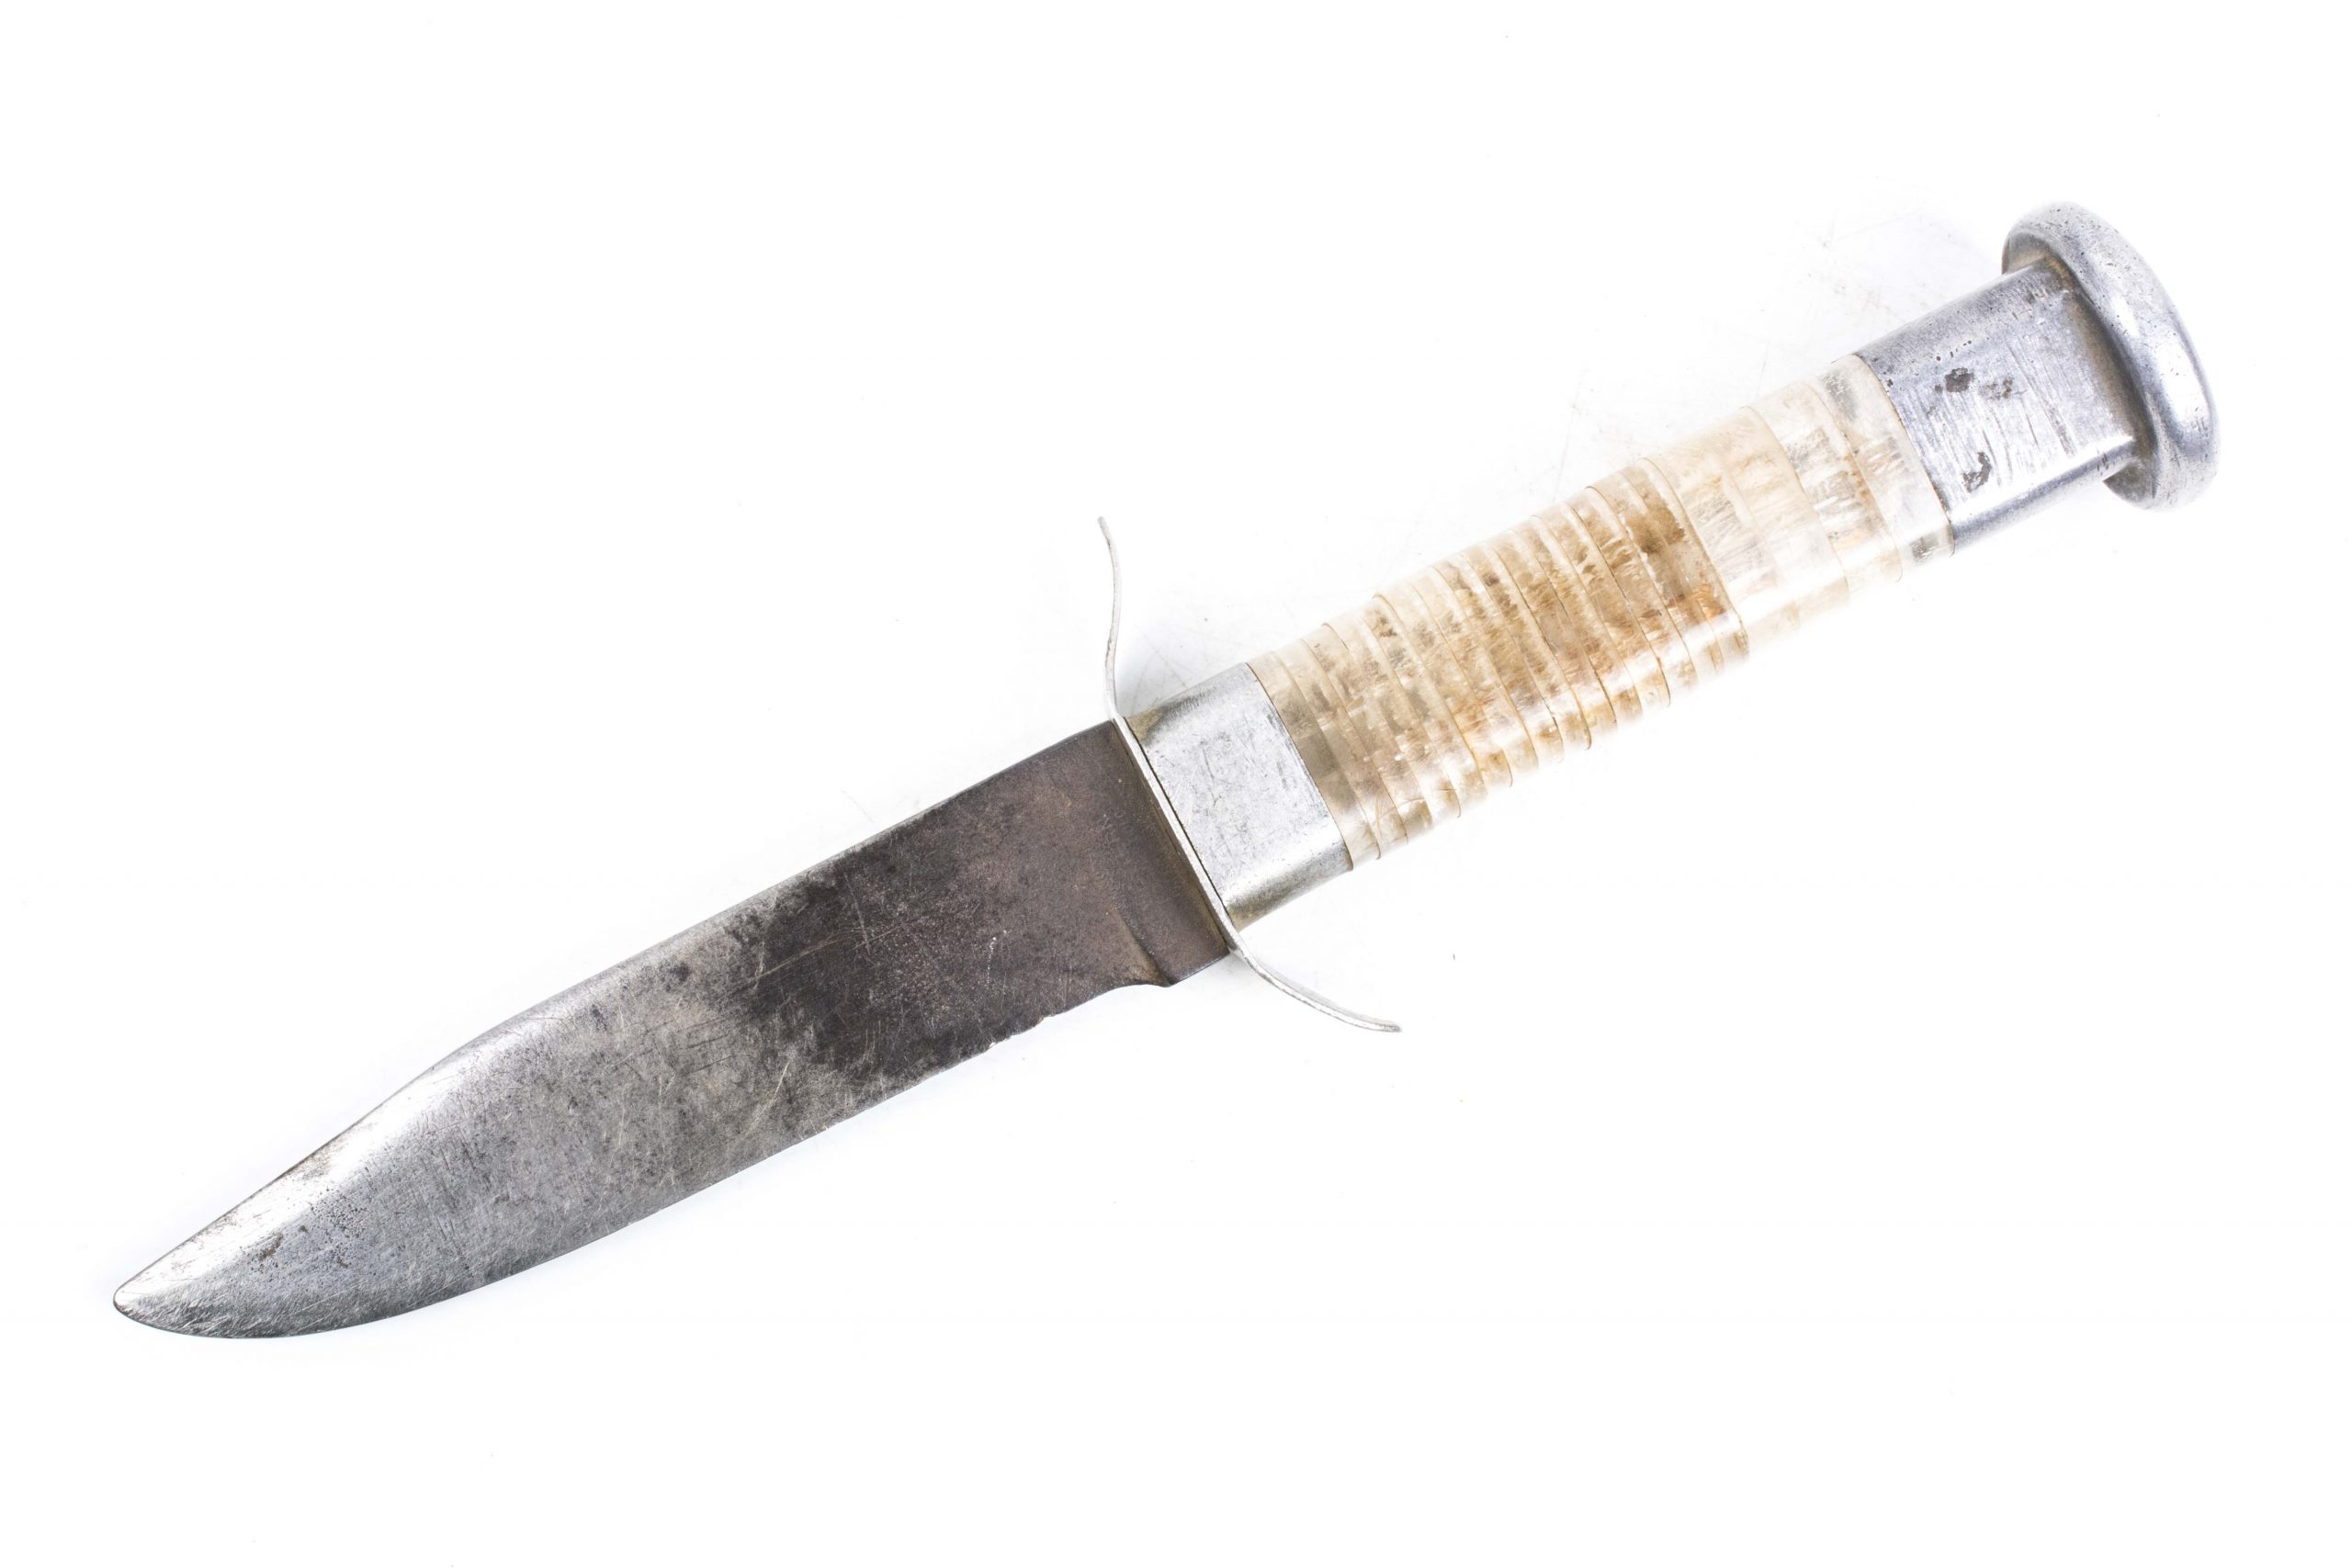 KN14 Flexcut Roughing Knife – Vesterheim Museum Store